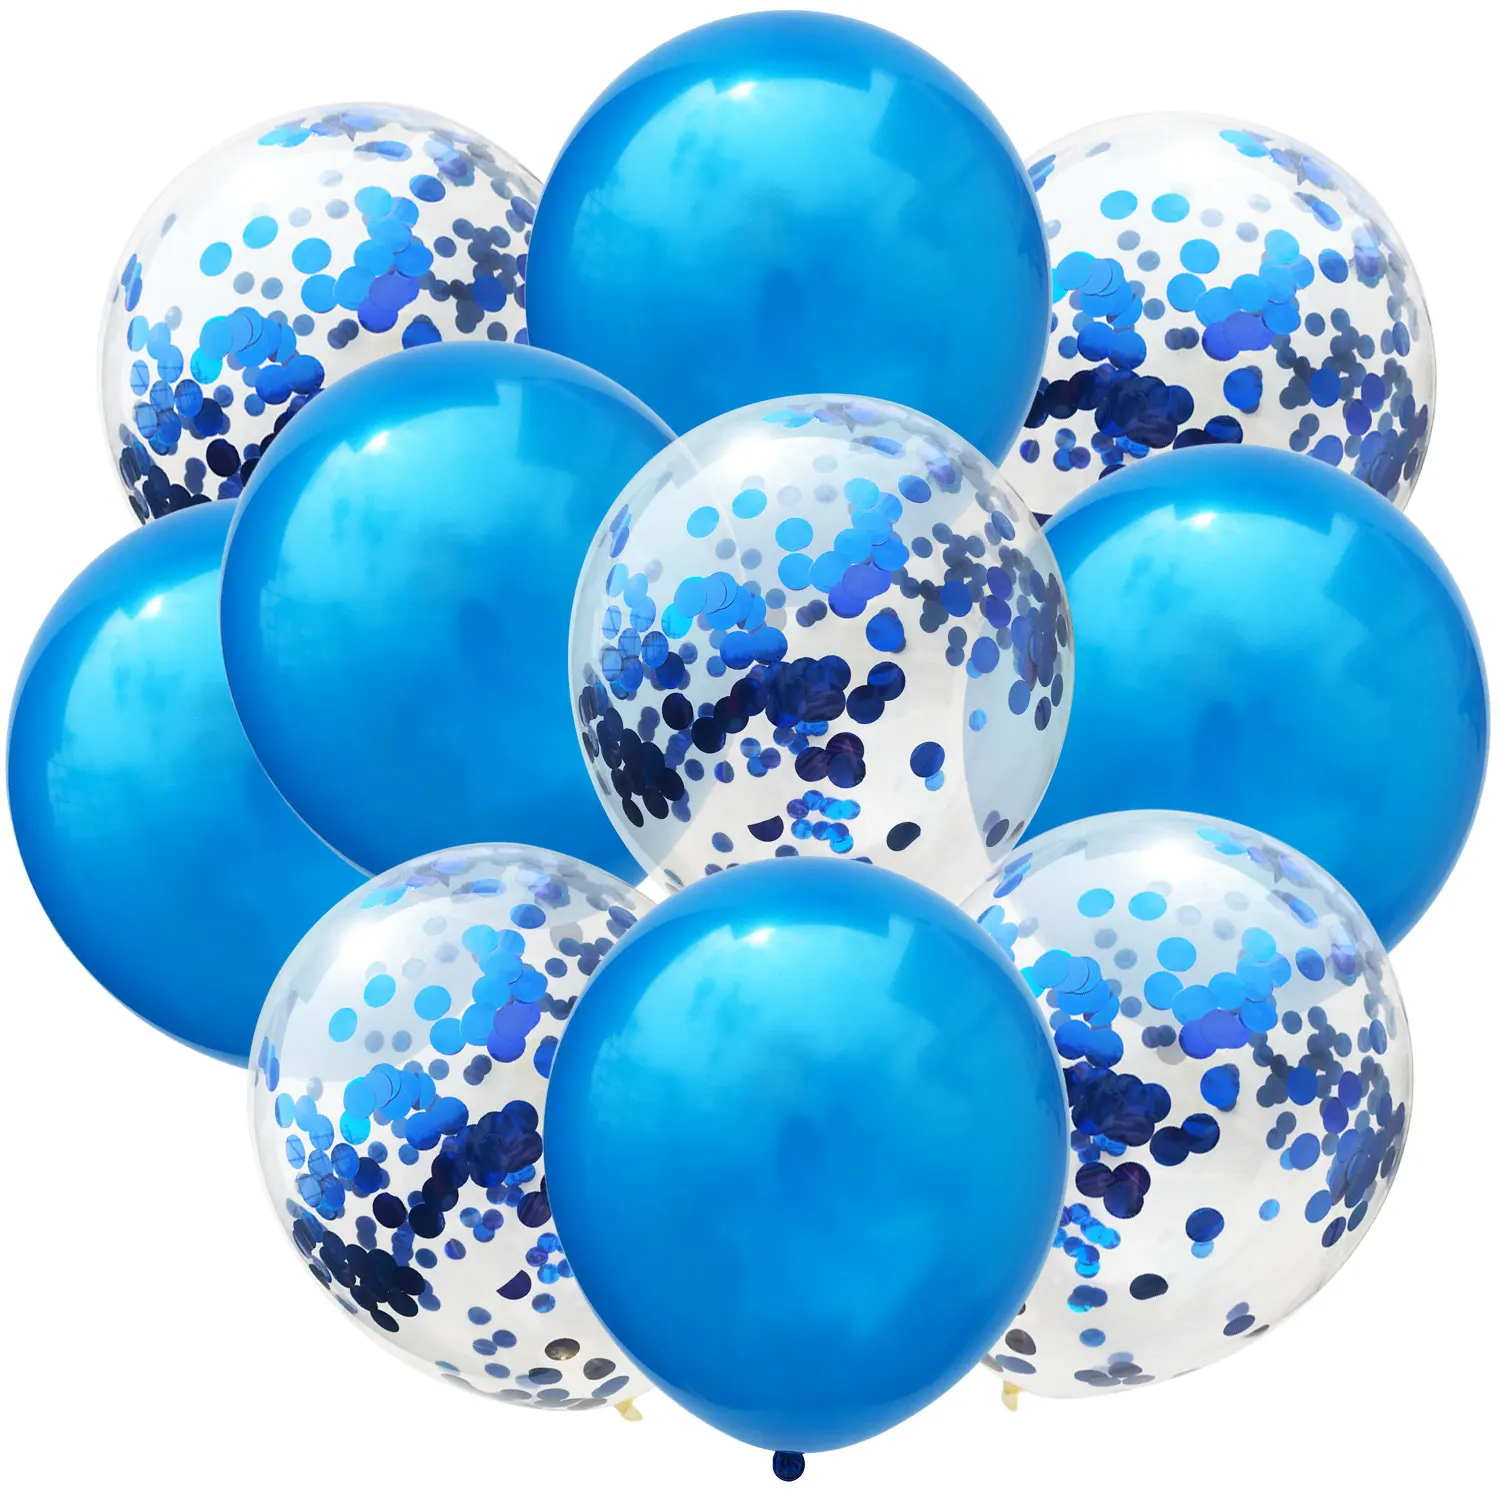 ZLJQ 10 шт. разноцветные конфетти воздушные шары на день рождения украшения для детей и взрослых металлический шар воздушный шар на день рождения прозрачный шар - Цвет: blue